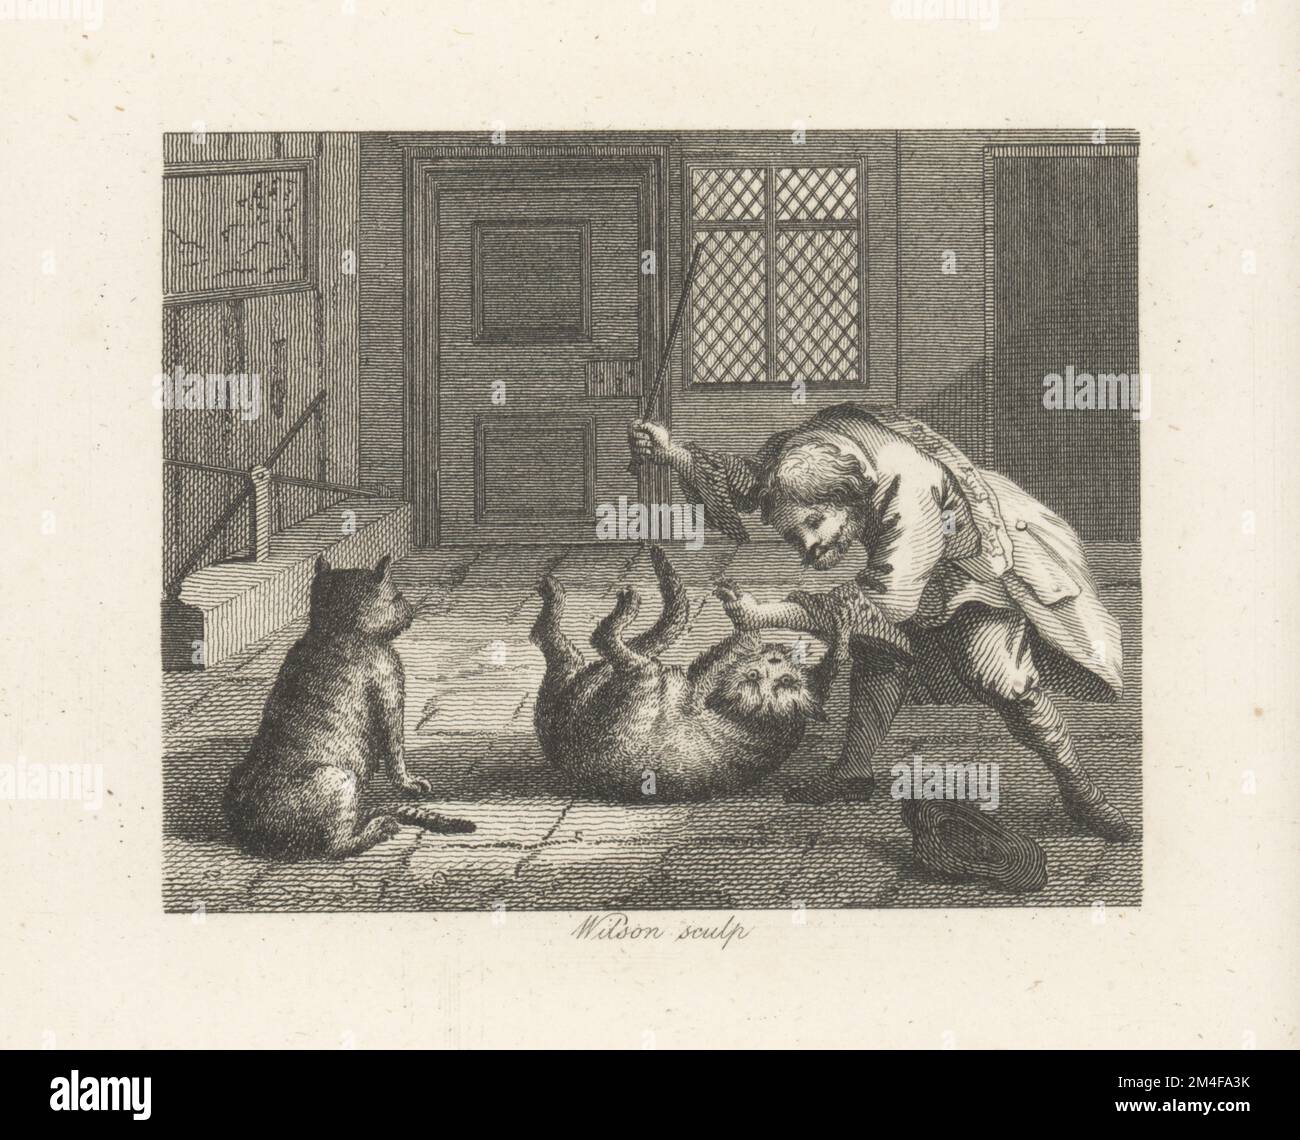 Rat-Catcher, 17th Century Stock Photo - Alamy